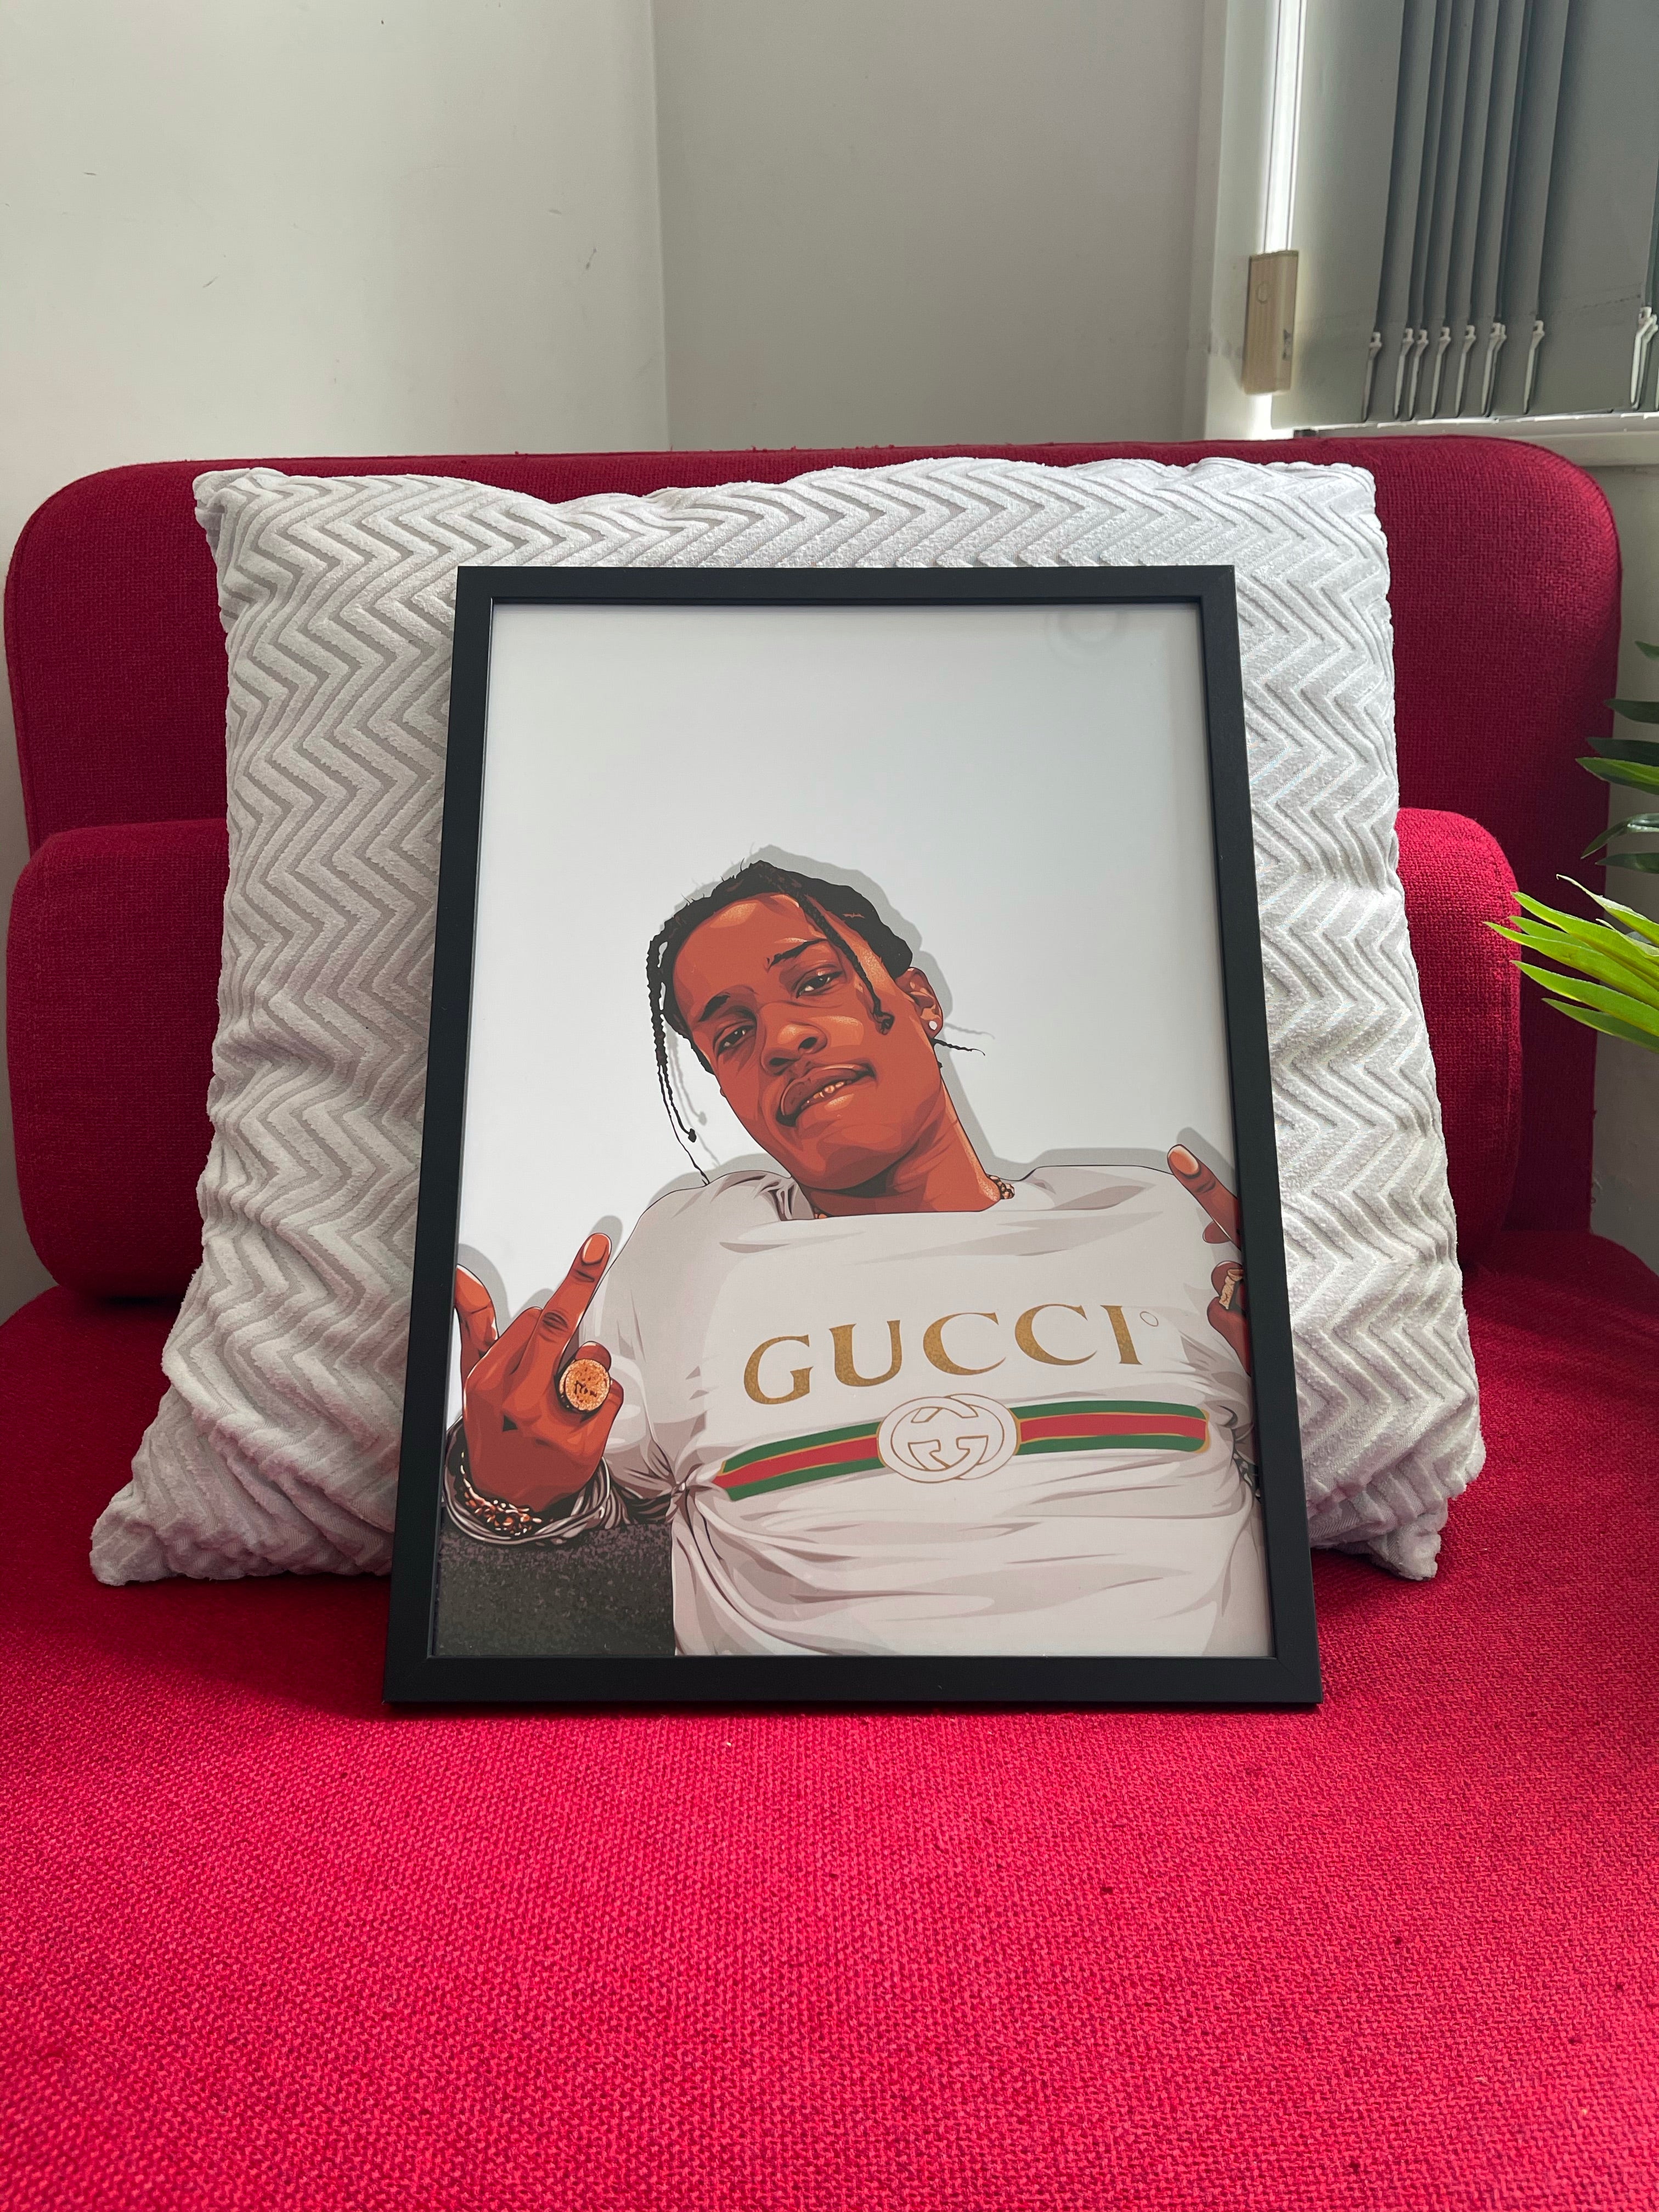 A$AP Rocky - A3 Framed Digital Art Poster - Poster Prints NZ